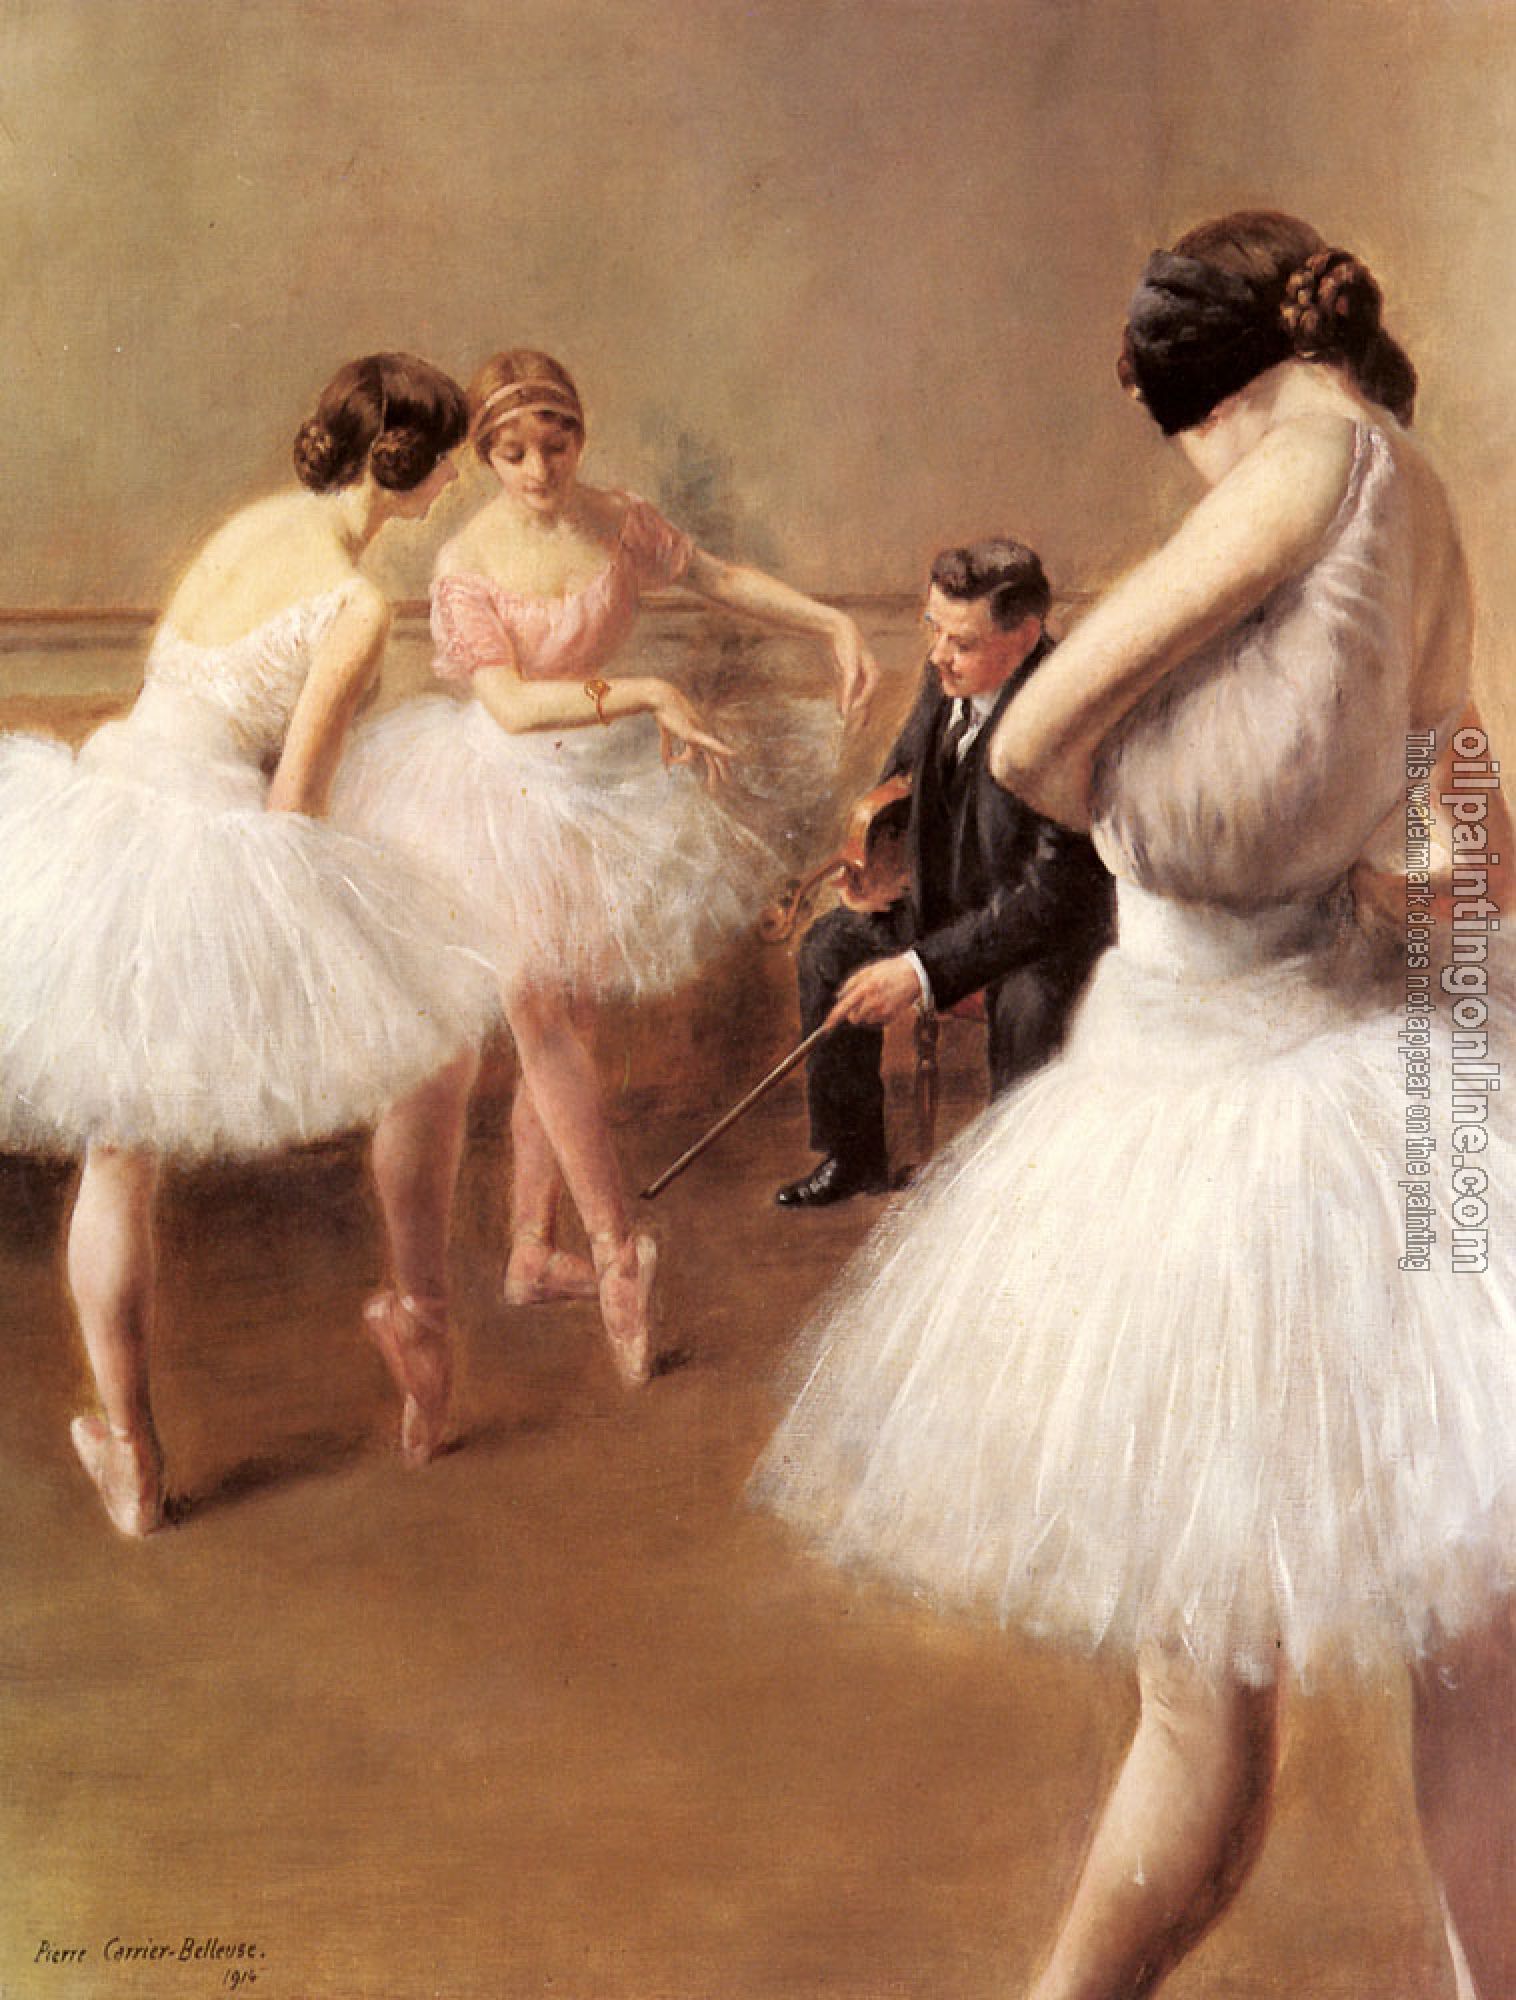 Pierre Carrier-Belleuse - The Ballet Lesson